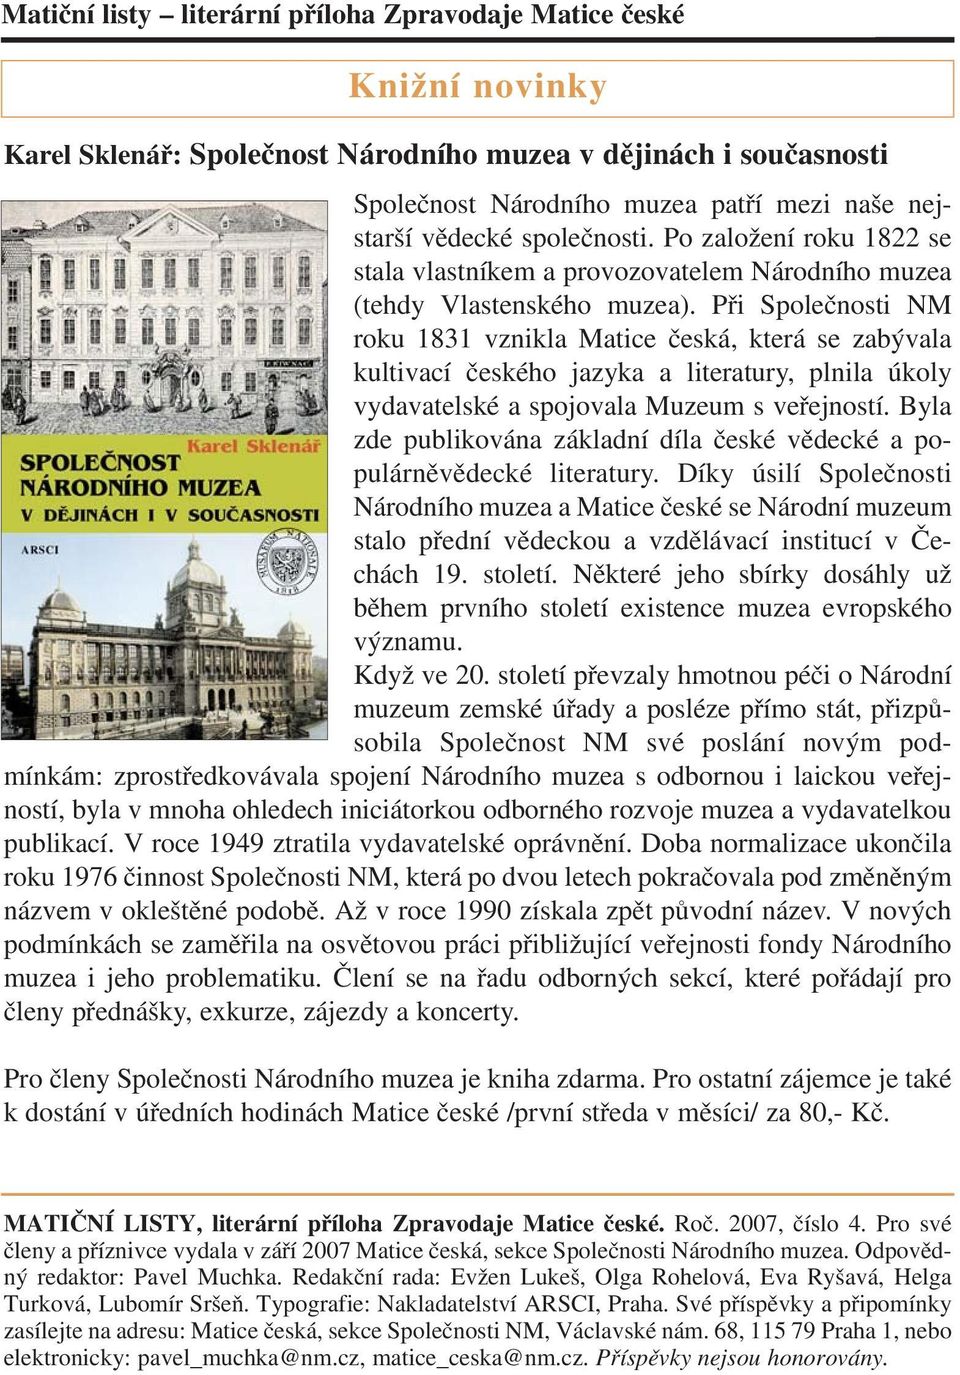 Při Společnosti NM roku 1831 vznikla Matice česká, která se zabývala kultivací českého jazyka a literatury, plnila úkoly vydavatelské a spojovala Muzeum s veřejností.